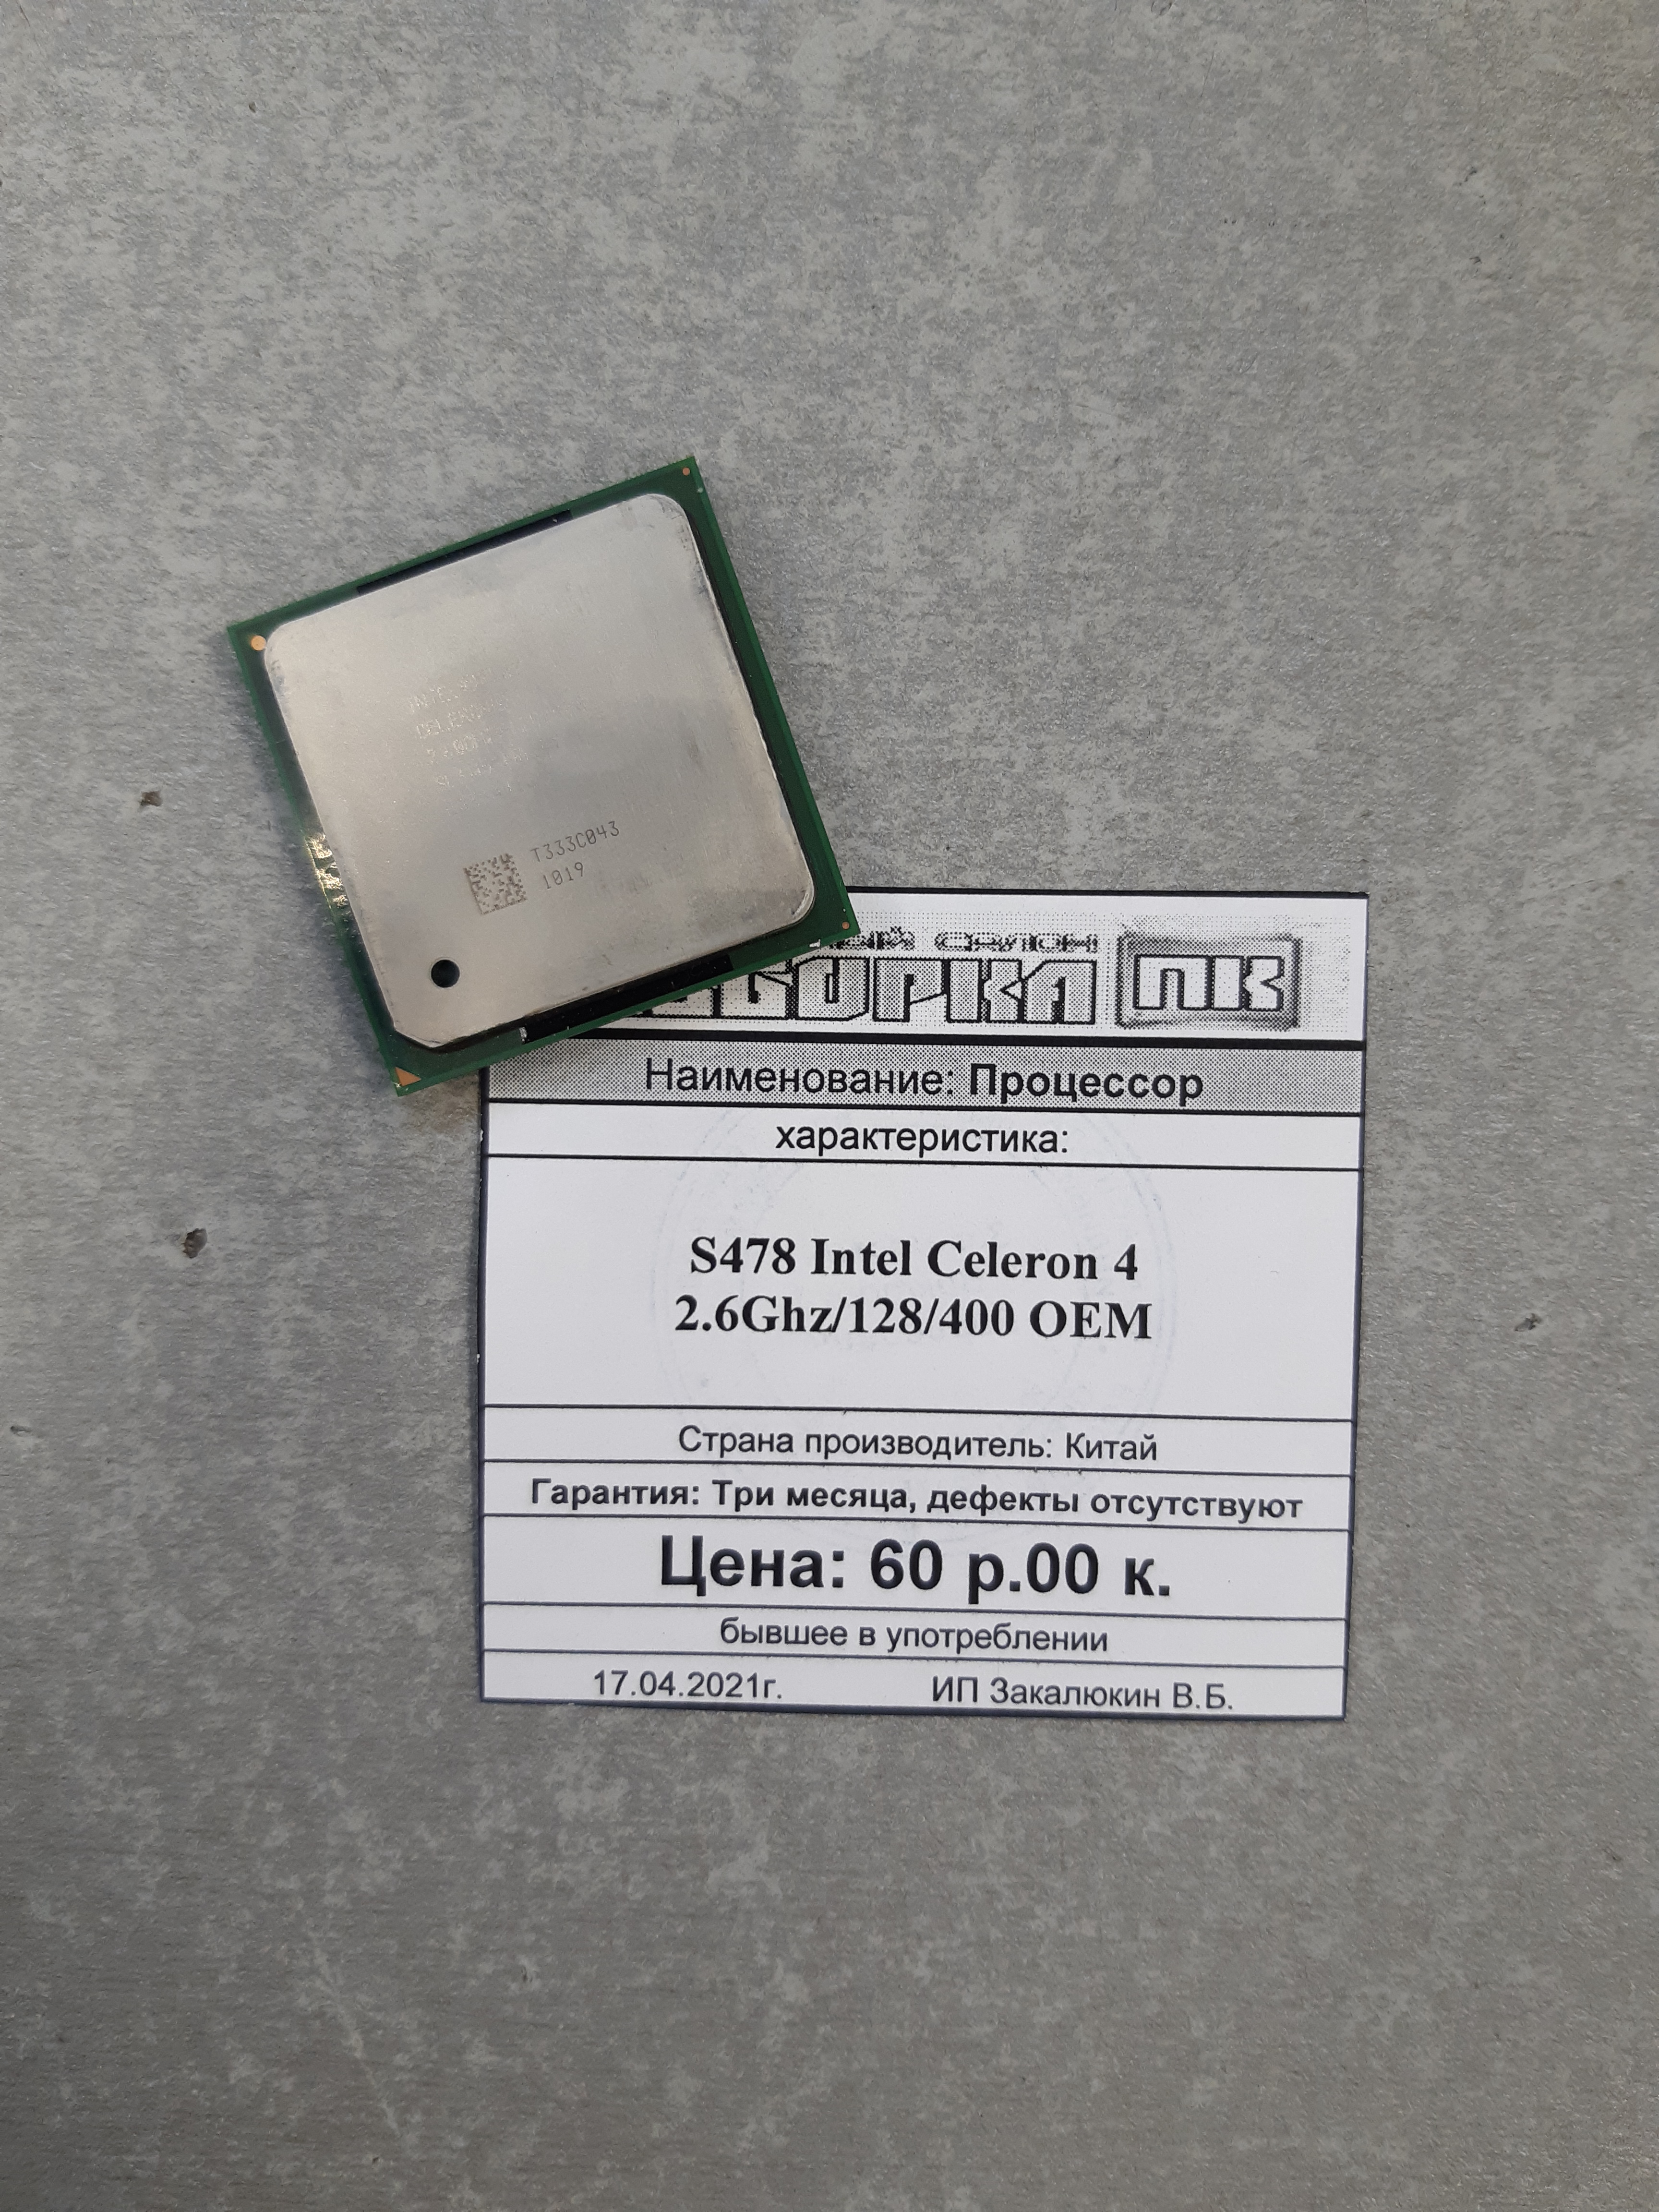 Процессор S478 Intel Celeron 2.6Ghz/128/400 OEM